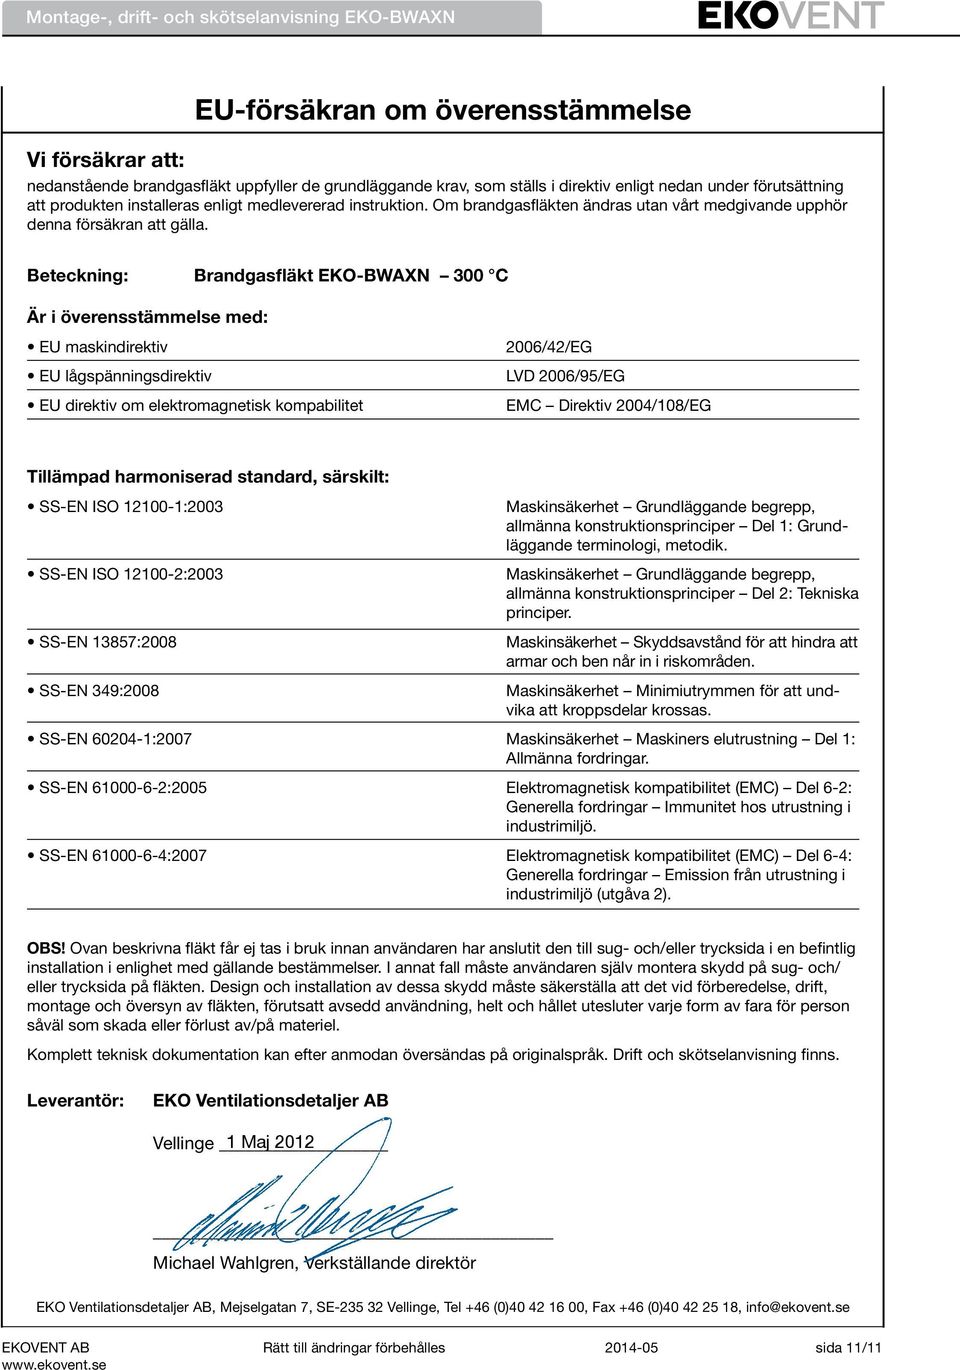 Beteckning: Brandgasfläkt EKO-BWAXN 300 C Är i överensstämmelse med: EU maskindirektiv EU lågspänningsdirektiv EU direktiv om elektromagnetisk kompabilitet 2006/42/EG LVD 2006/95/EG EMC Direktiv